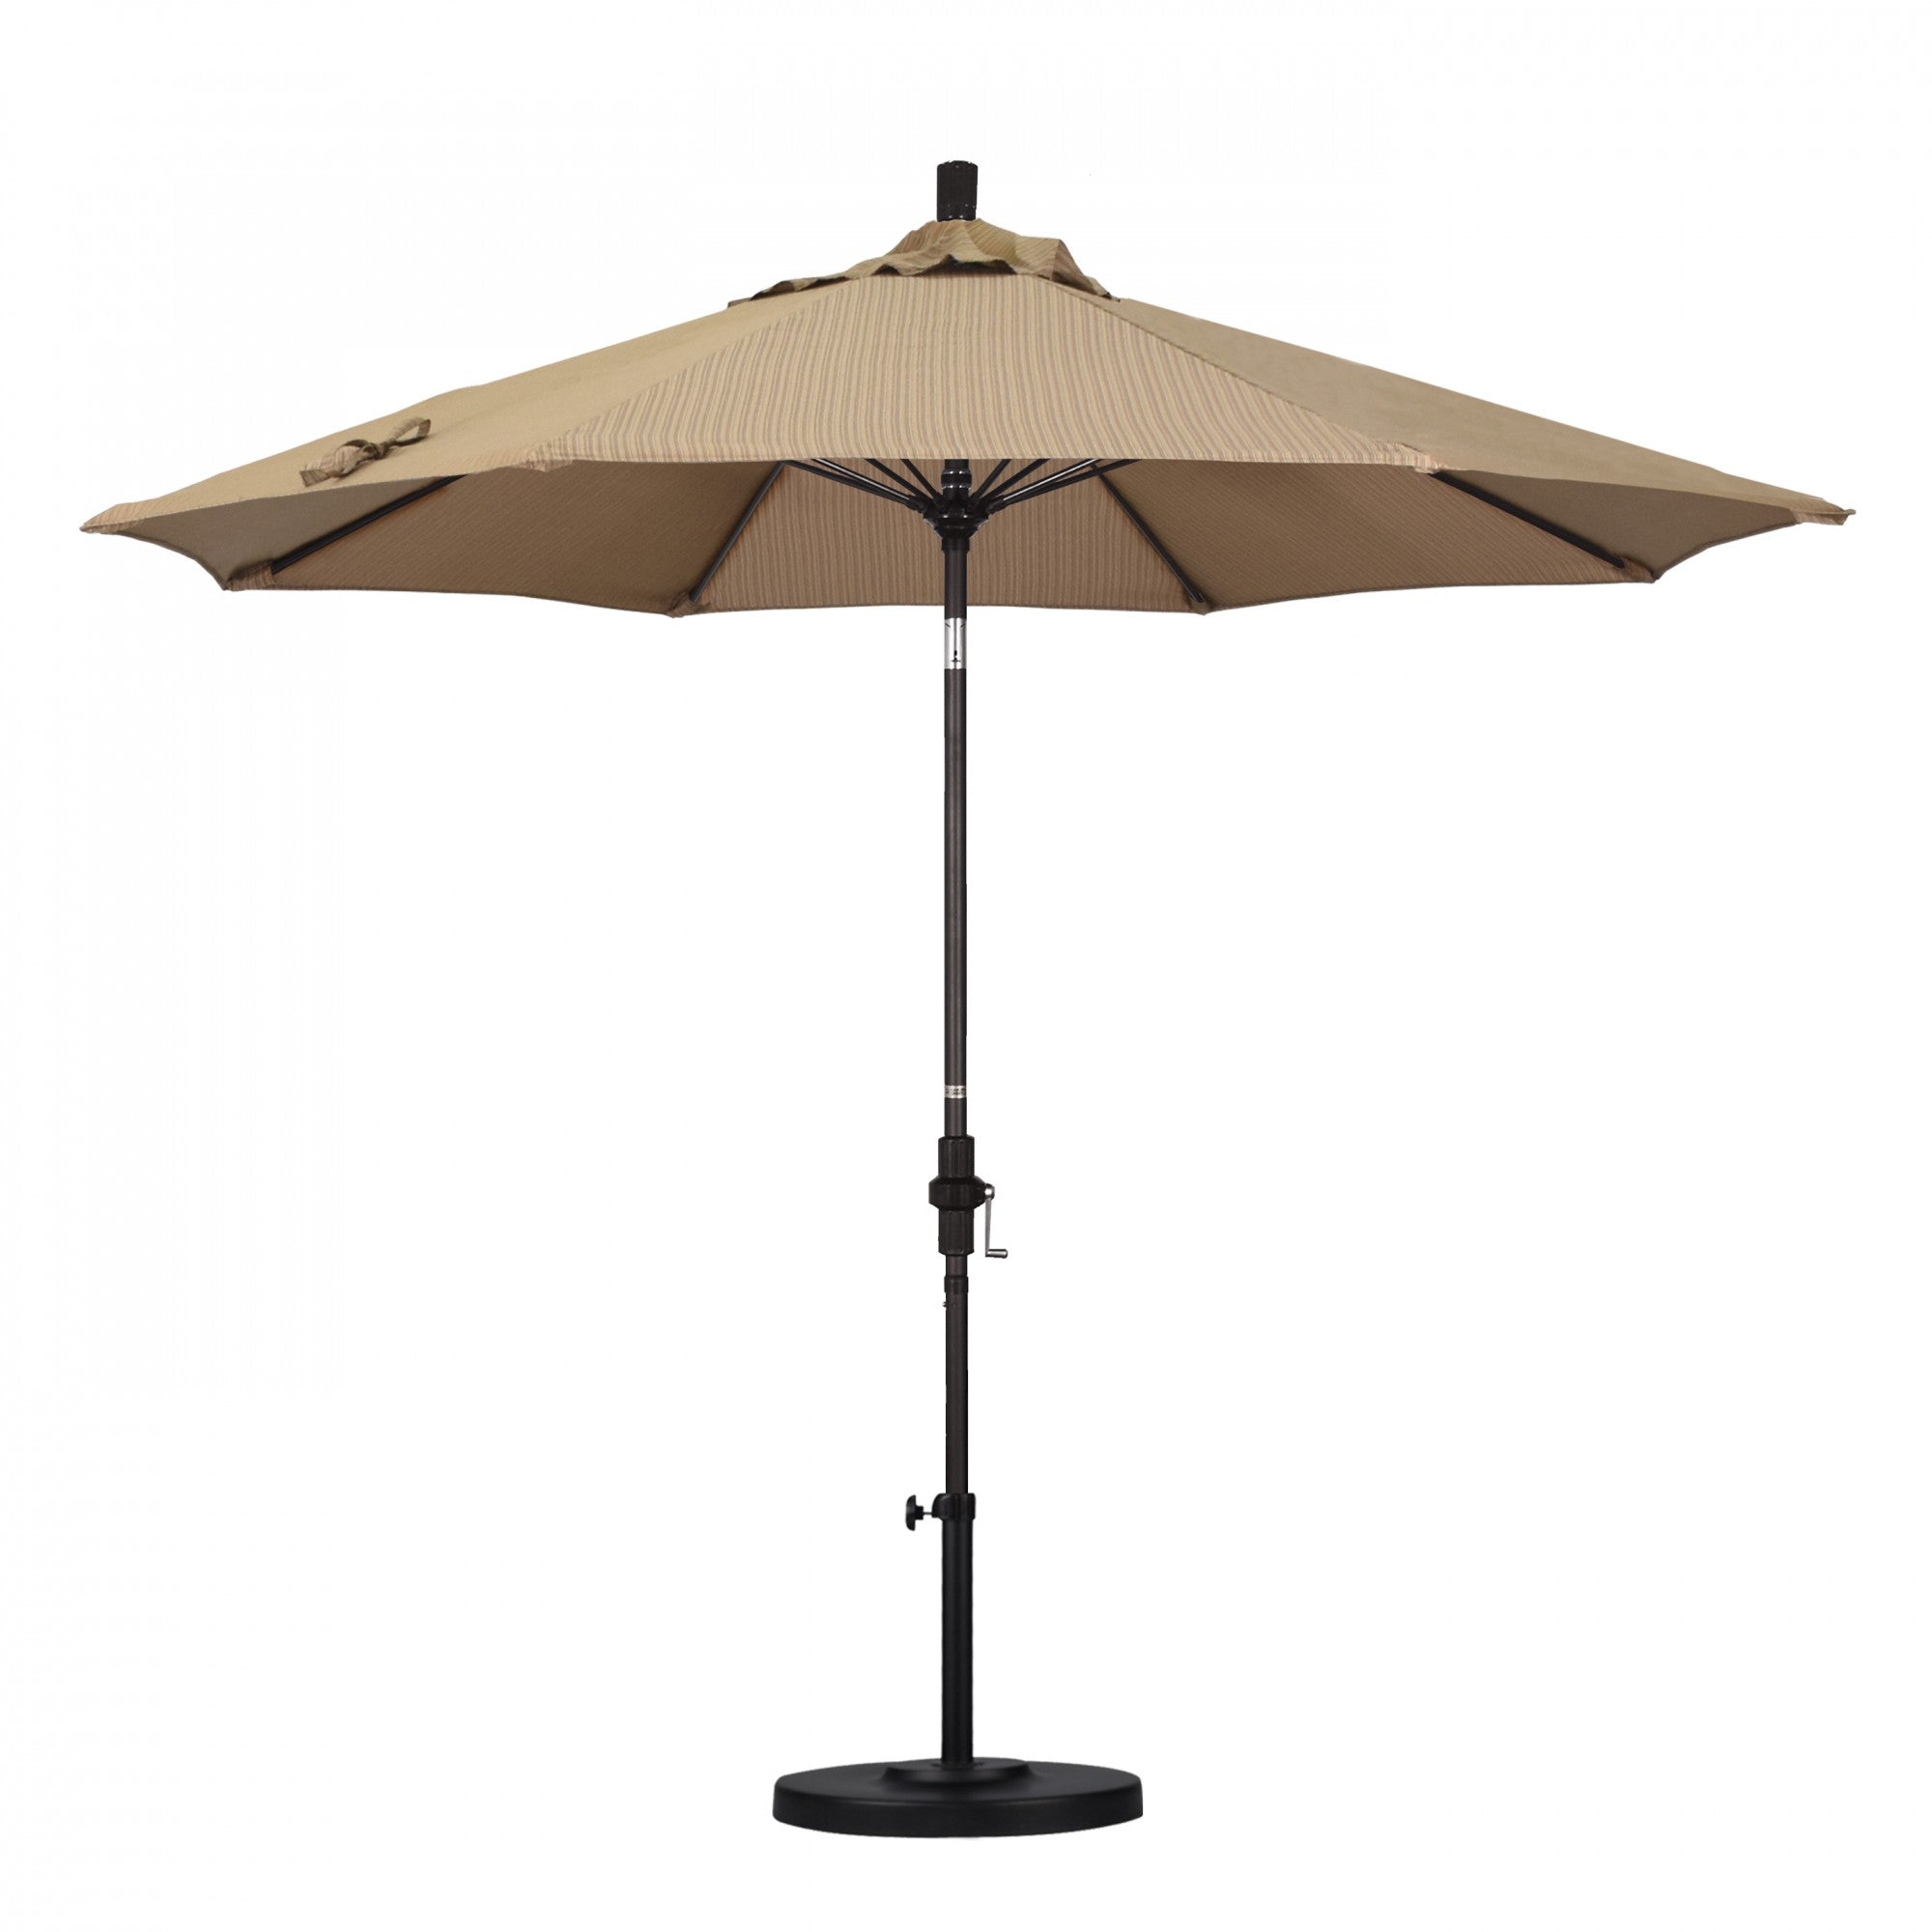 California Umbrella - 9' - Patio Umbrella Umbrella - Aluminum Pole - Terrace Sequoia - Olefin - GSCUF908117-FD10